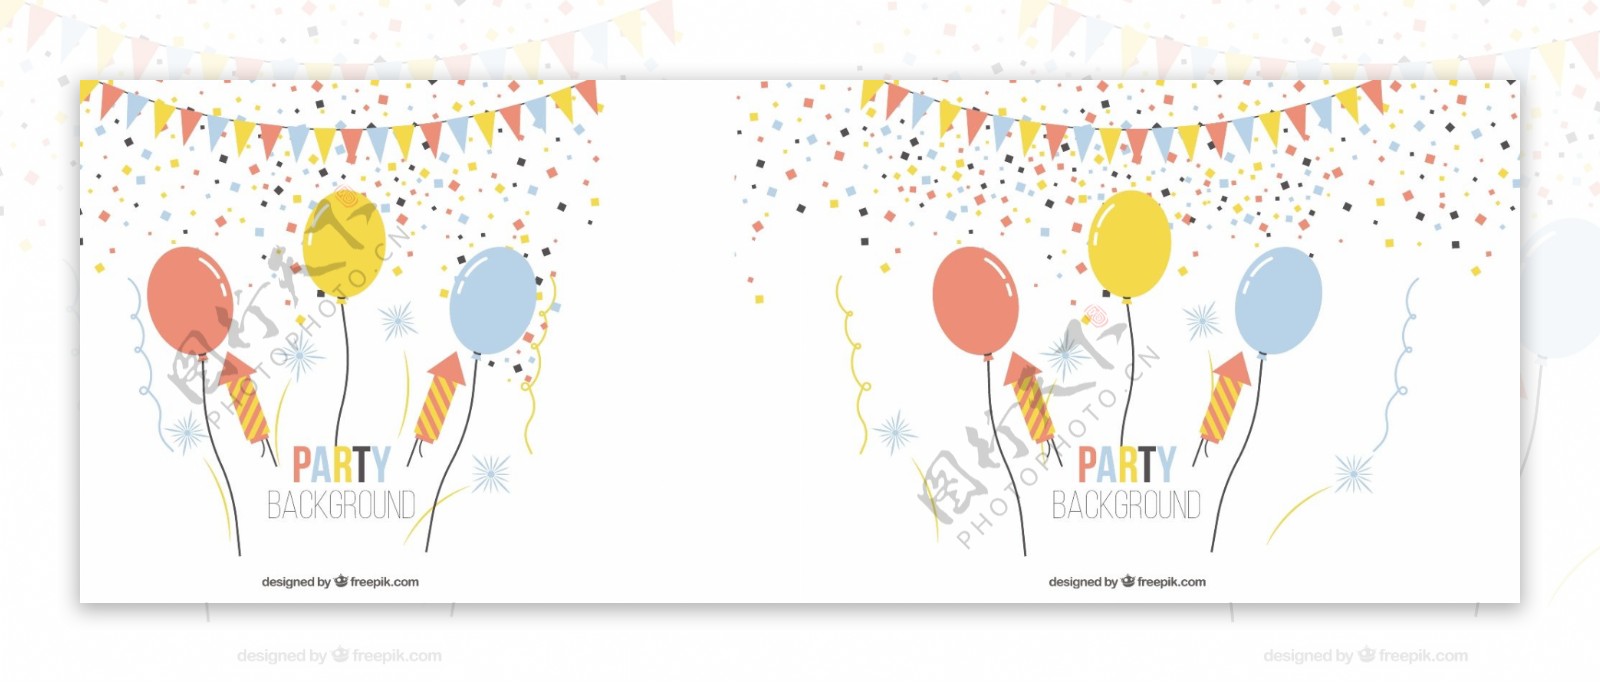 生日聚会用气球和彩带背景